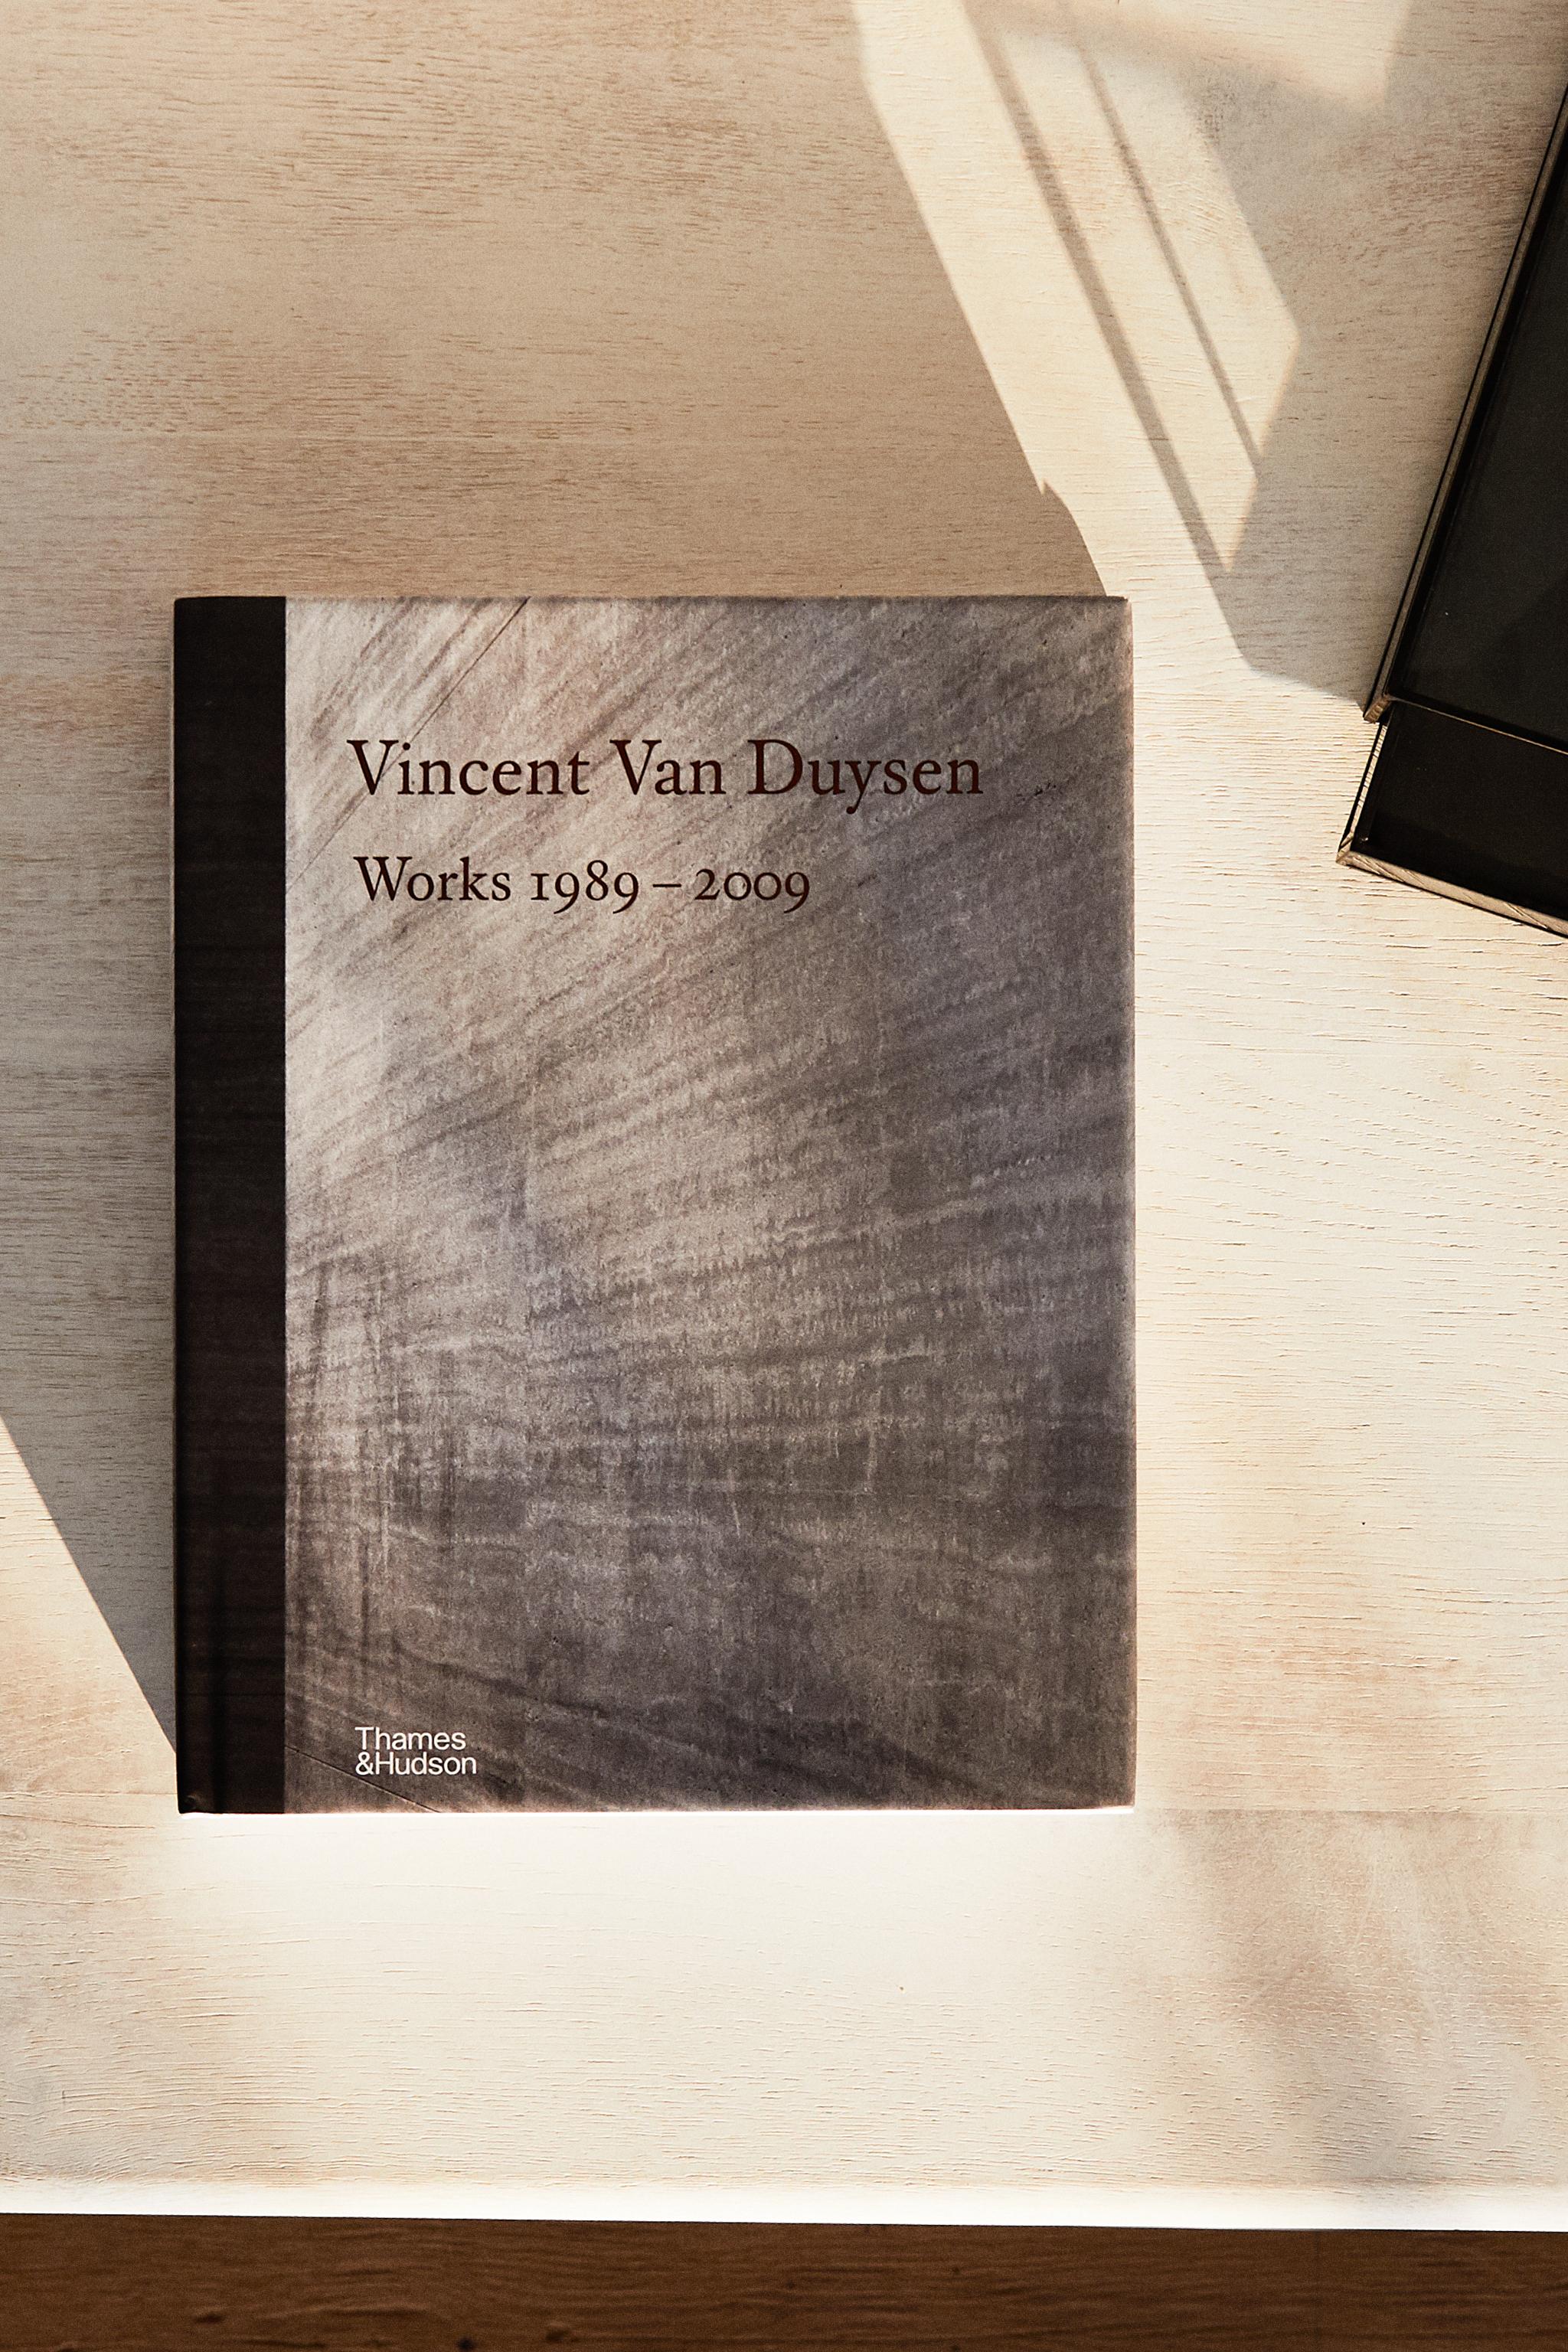 VINCENT VAN DUYSEN WORKS 1989-2009